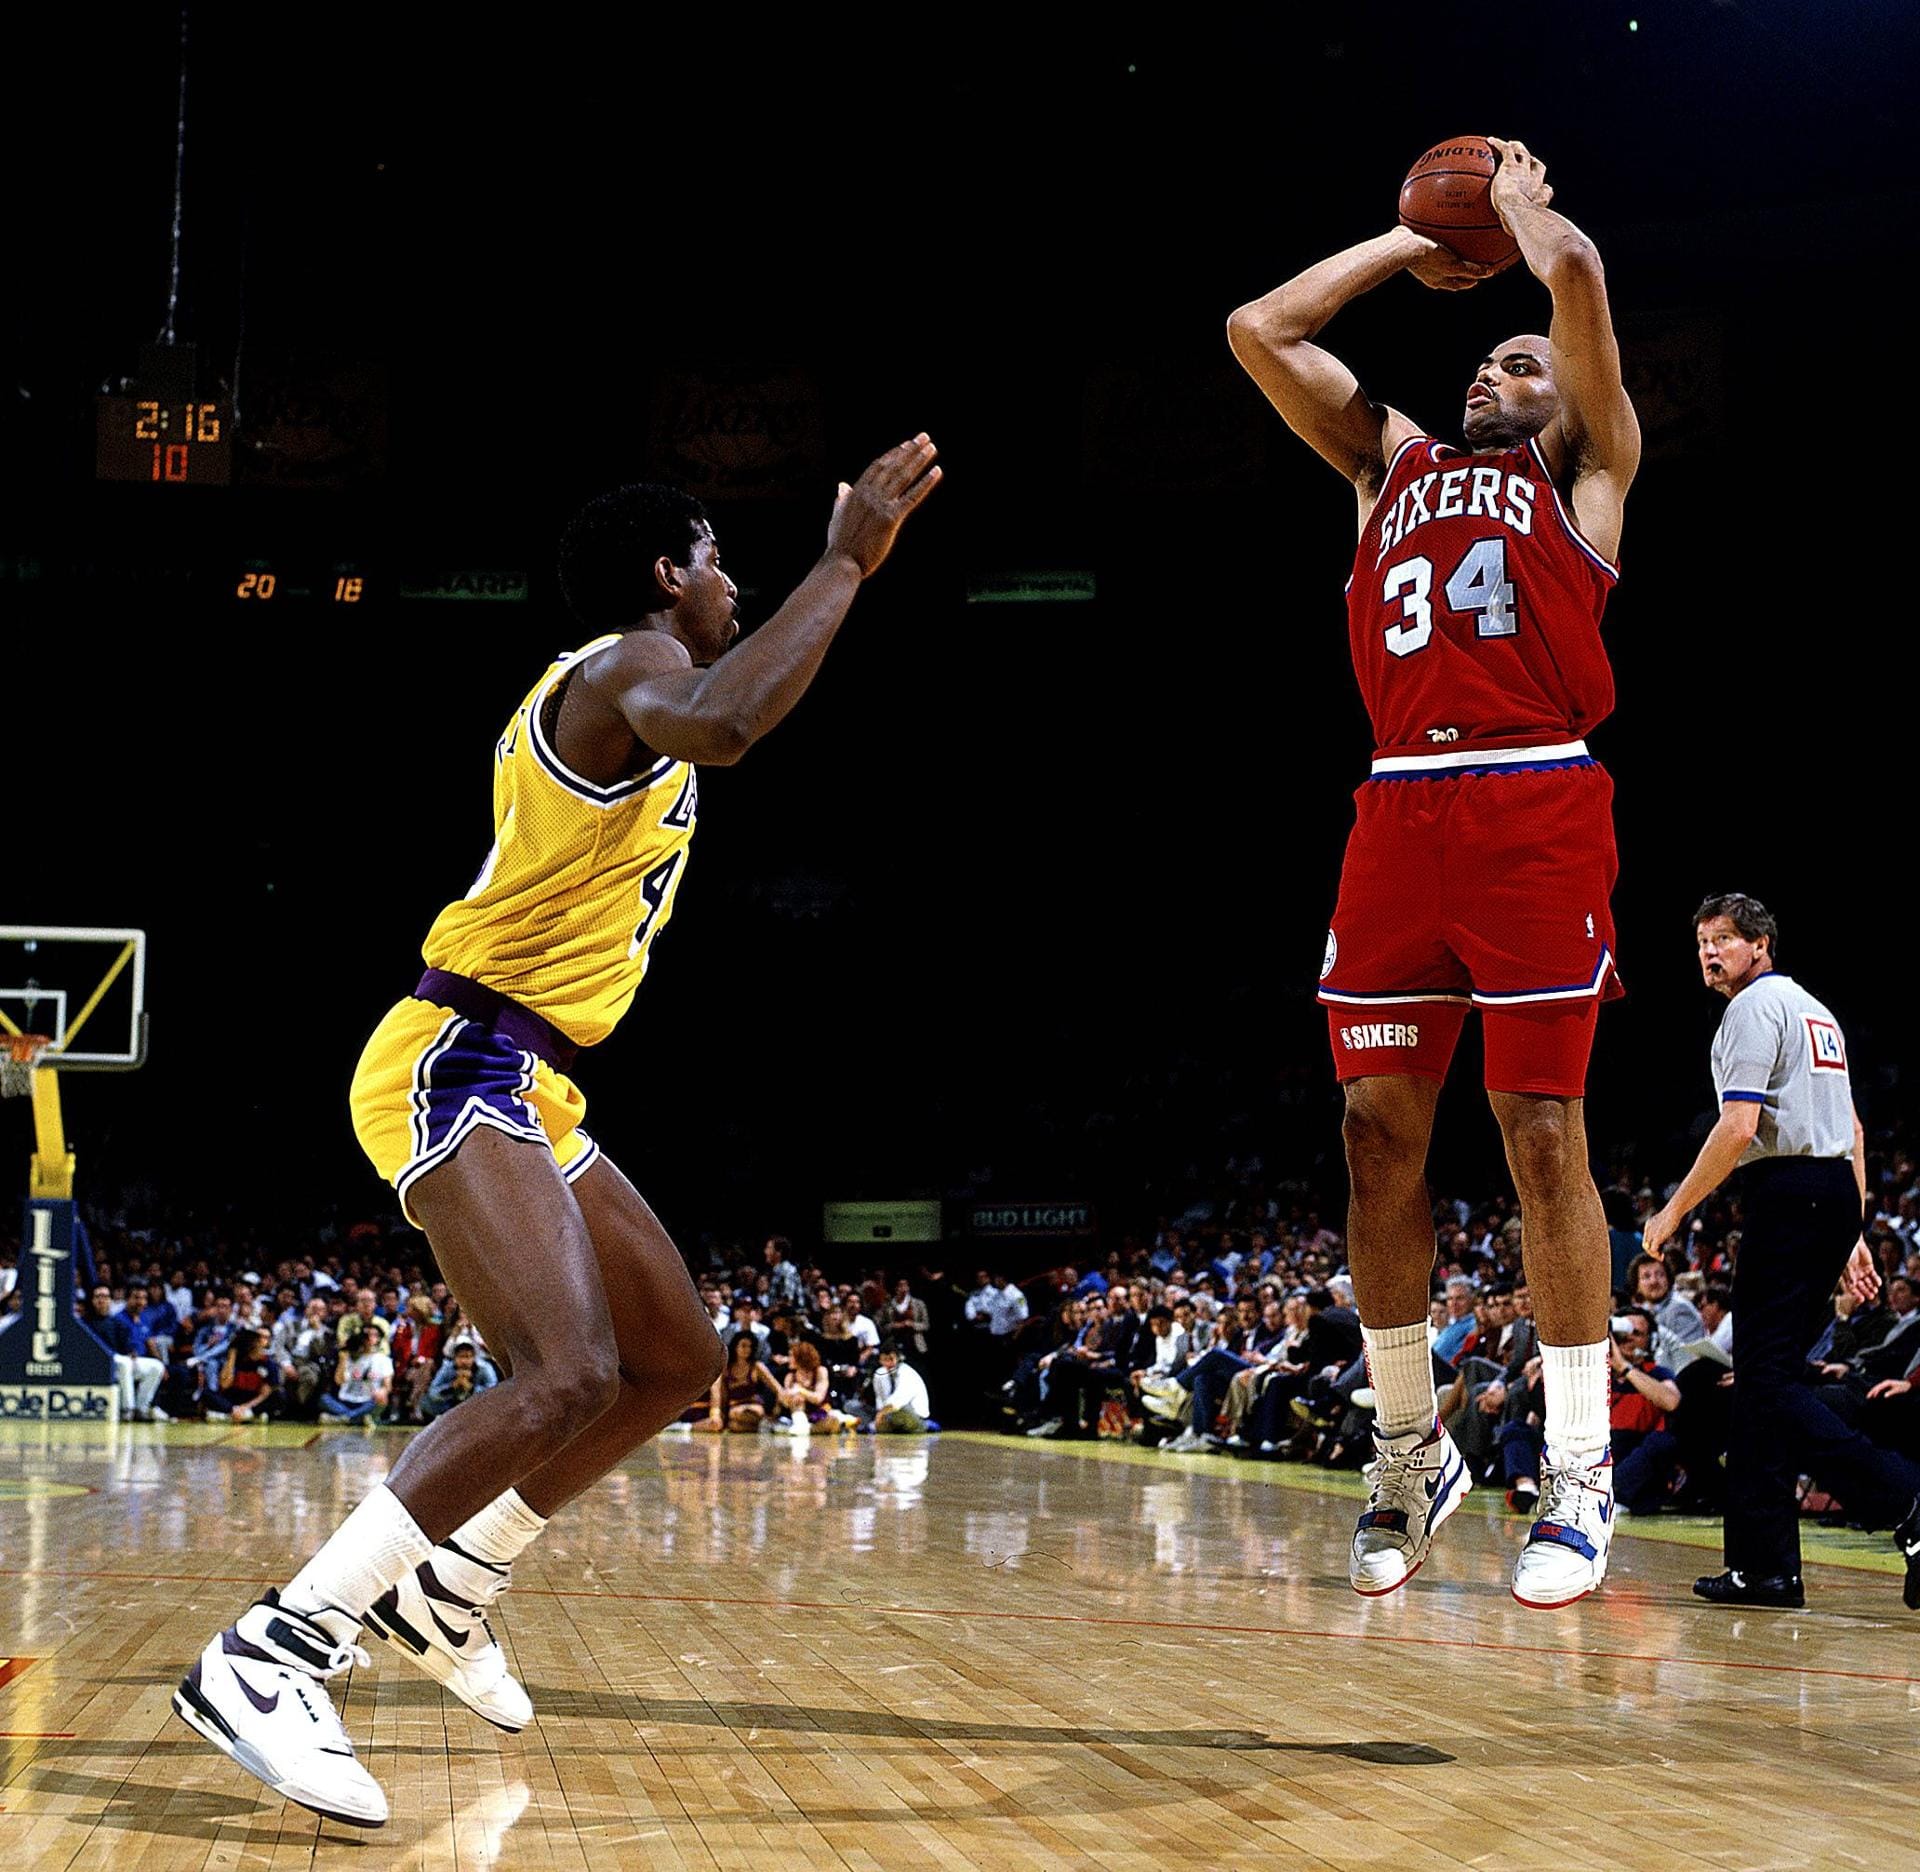 "Sir" Charles Barkley (1984 - 2000) war für einen Power Forward sehr klein (1,98 m). Auch sein Körperbau war nicht gerade der eines Basketball-Spielers. Er selbst sagte, dass er deswegen härter arbeiten musste als andere. Und das tat er auch. Trotz seiner geringen Größe sammelte er 11,7 Rebounds im Schnitt. Barkley war außerdem er ein guter Scorer, der auch von draußen treffen konnte. '93 wurde der charismatische Spieler MVP und führte die Phoenix Suns ins Finale. Aber zum Titel reichte es nie.